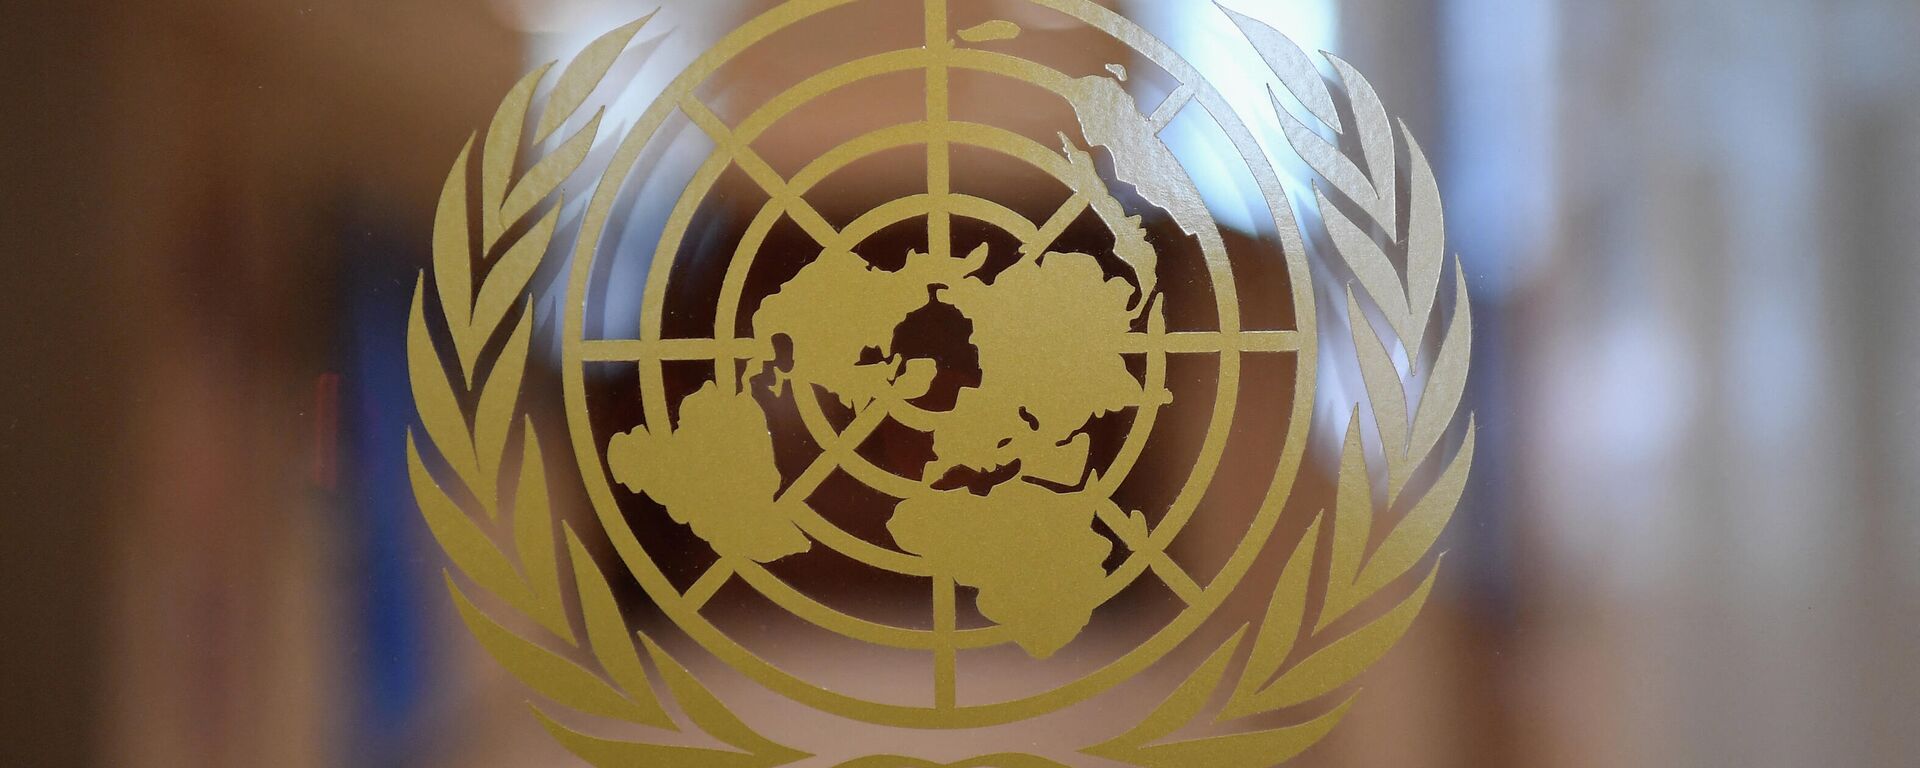 Логотип Организации Объединенных Наций будет виден внутри Организации Объединенных Наций  - Sputnik Абхазия, 1920, 21.10.2021